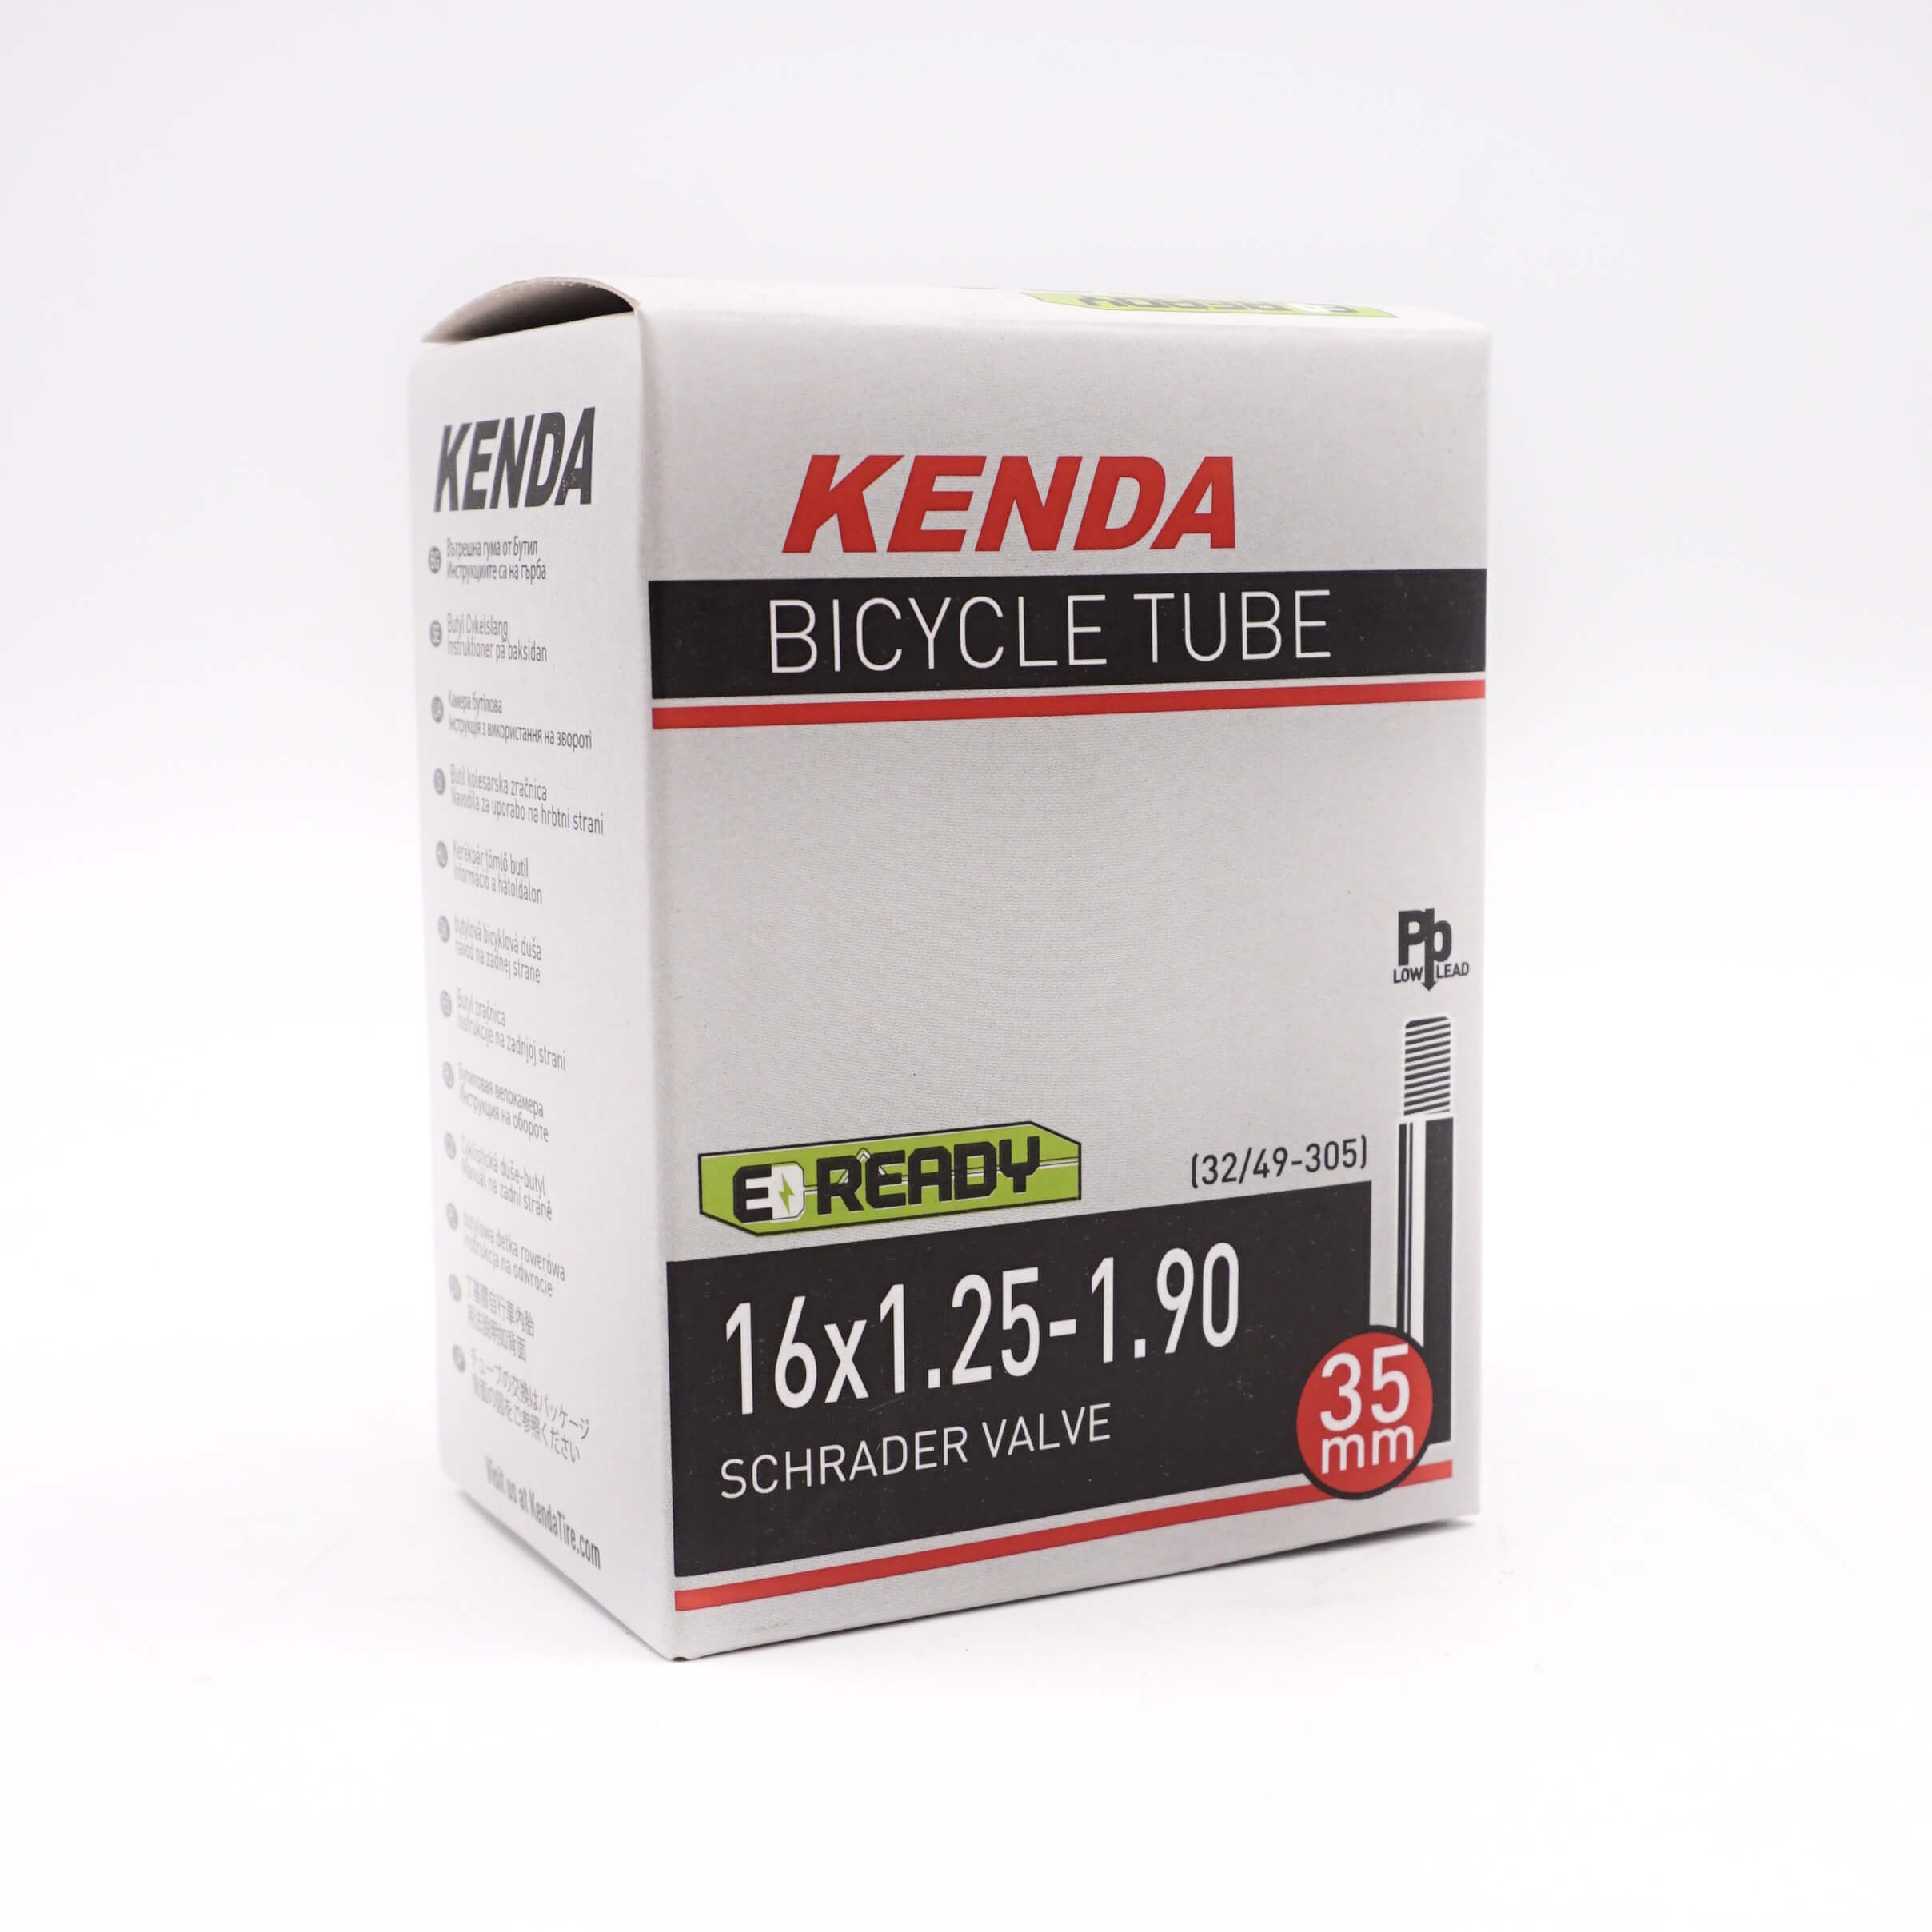 16x1.25-1.90 Kenda Schrader Valve Tube - The Bikesmiths